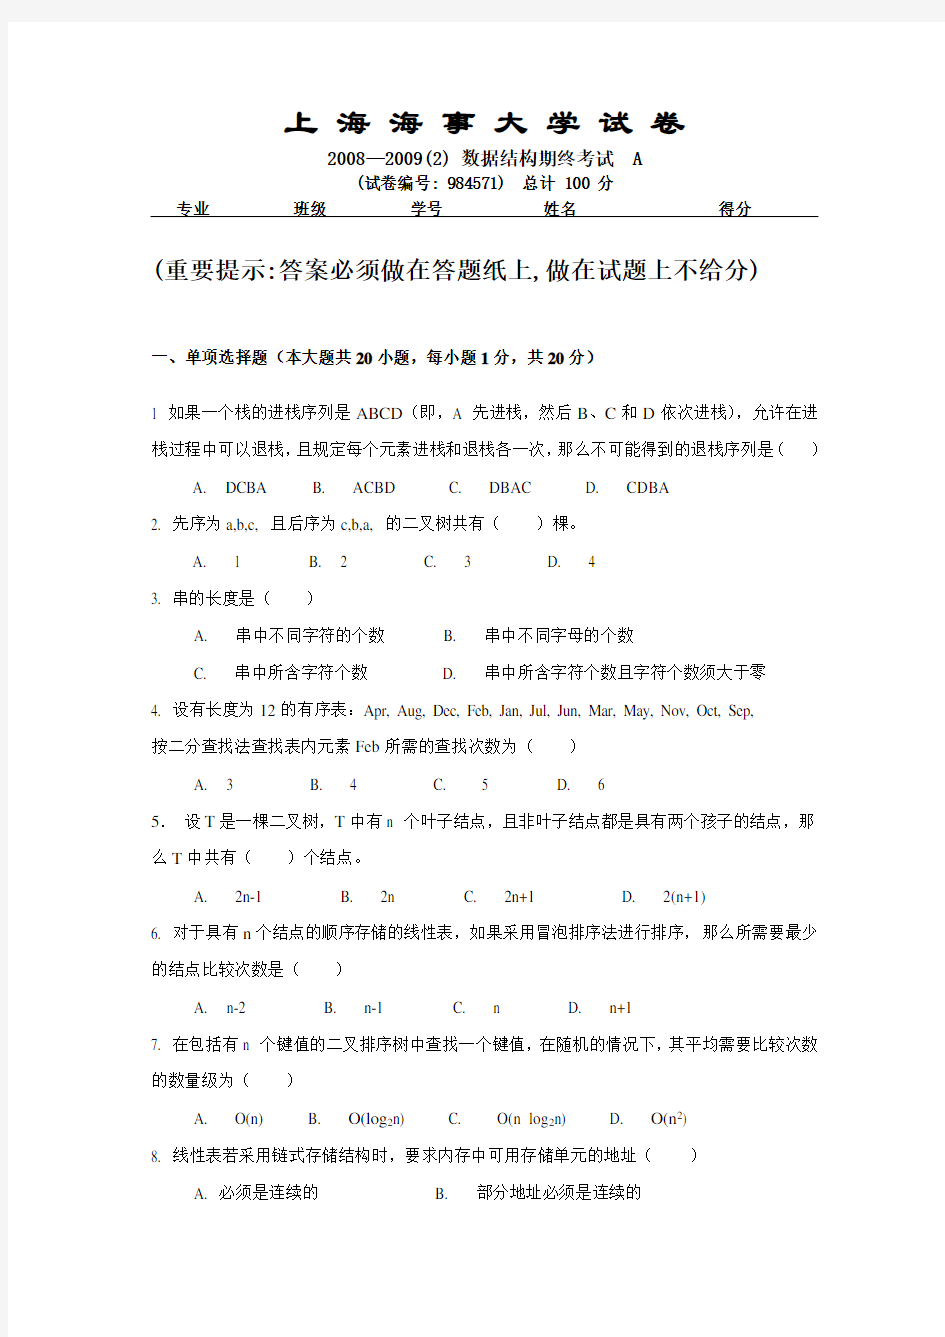 上海海事大学 数据结构试题 2009年期末